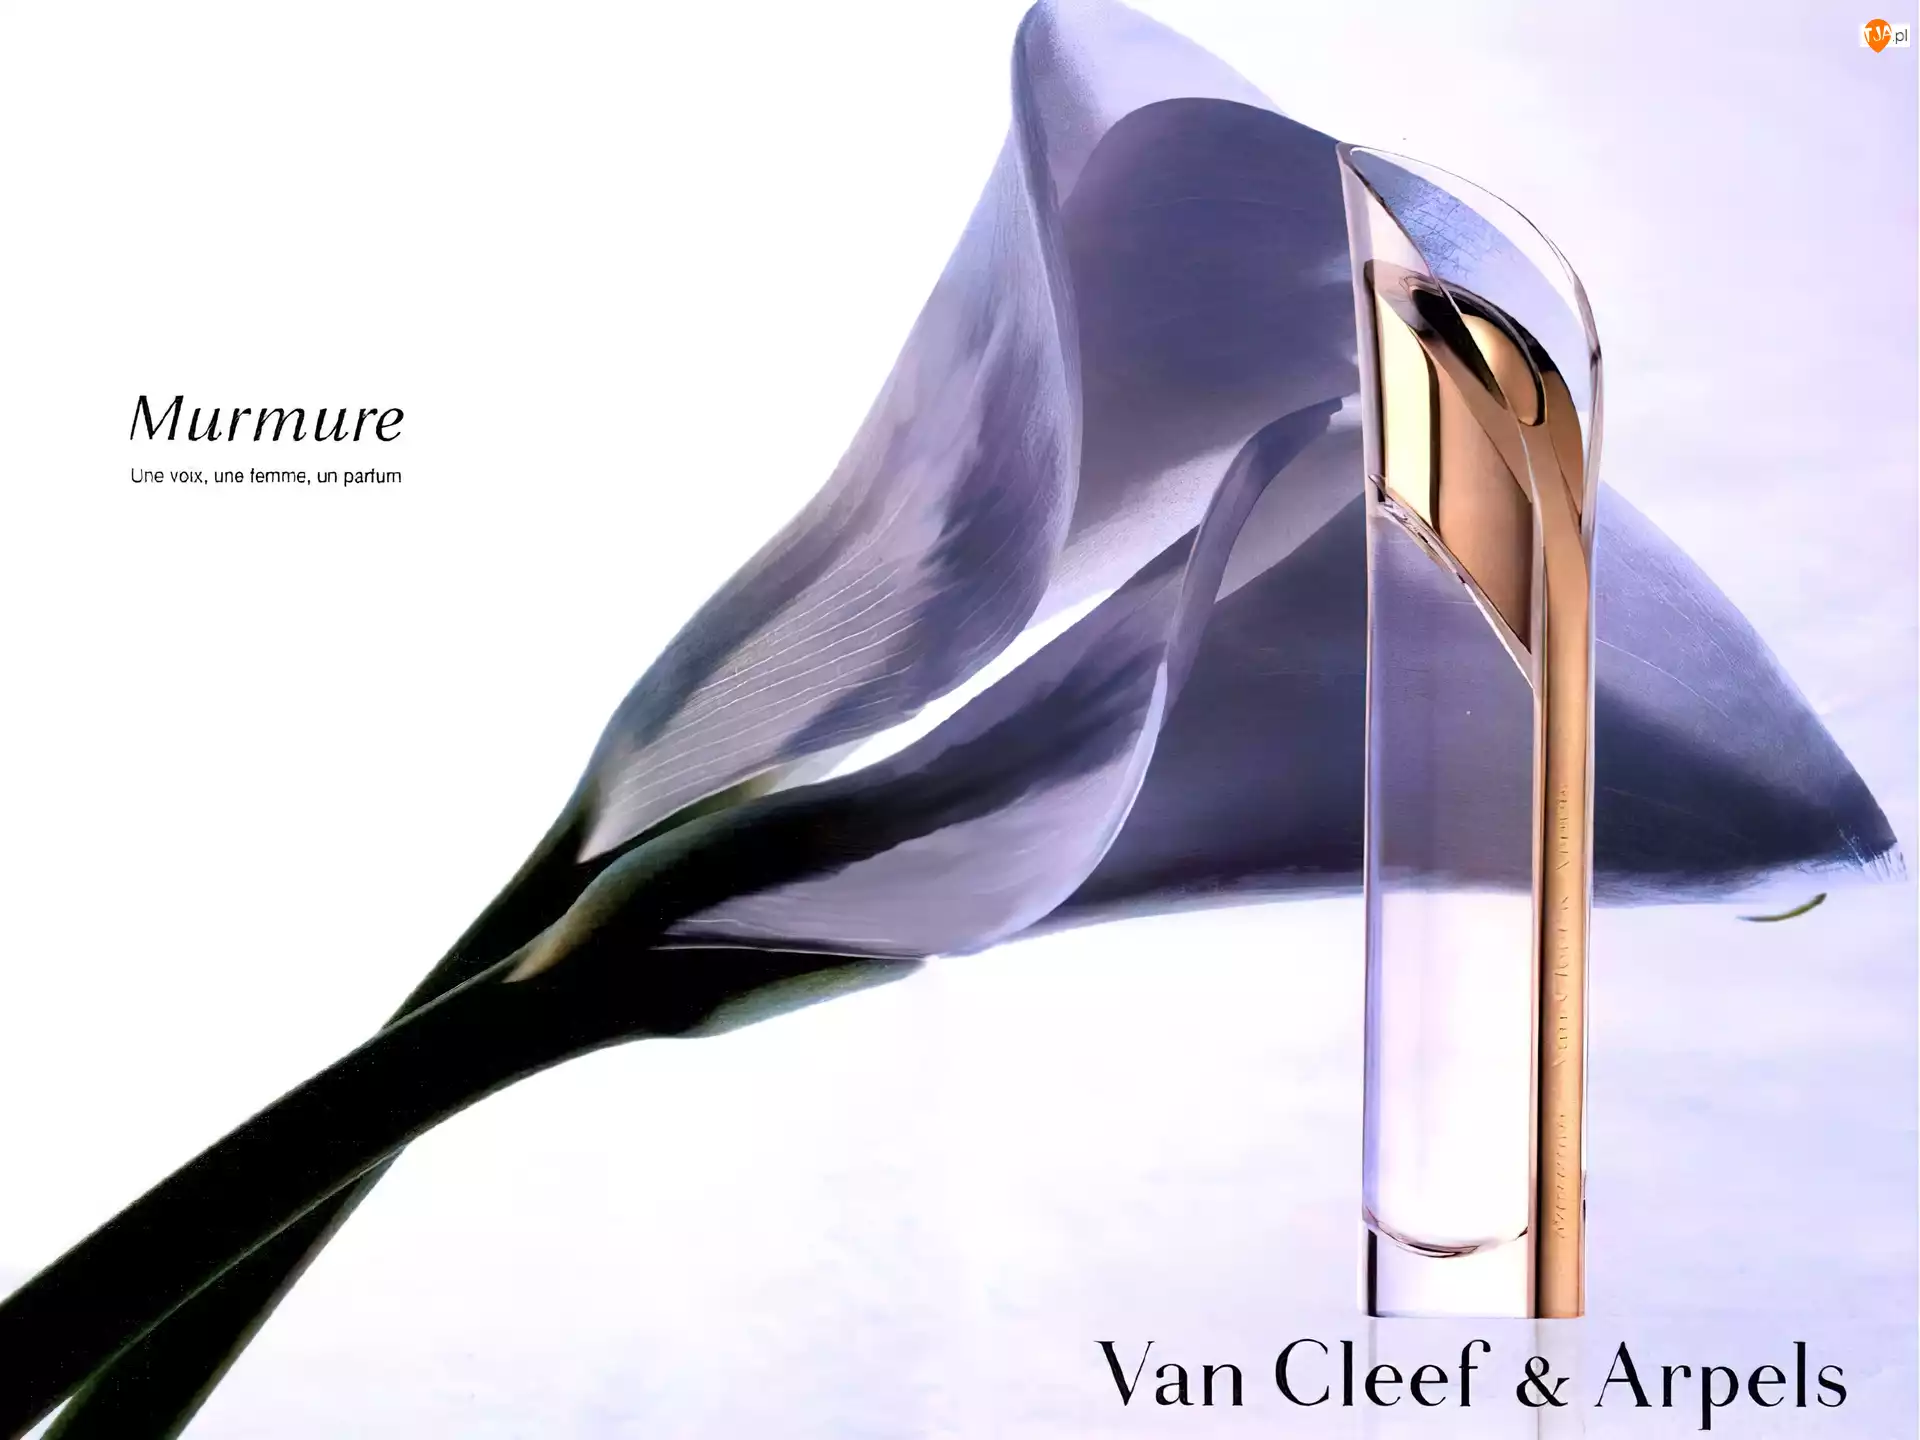 Van Cleef & Arpels, Perfumy, Damskie, Murmure